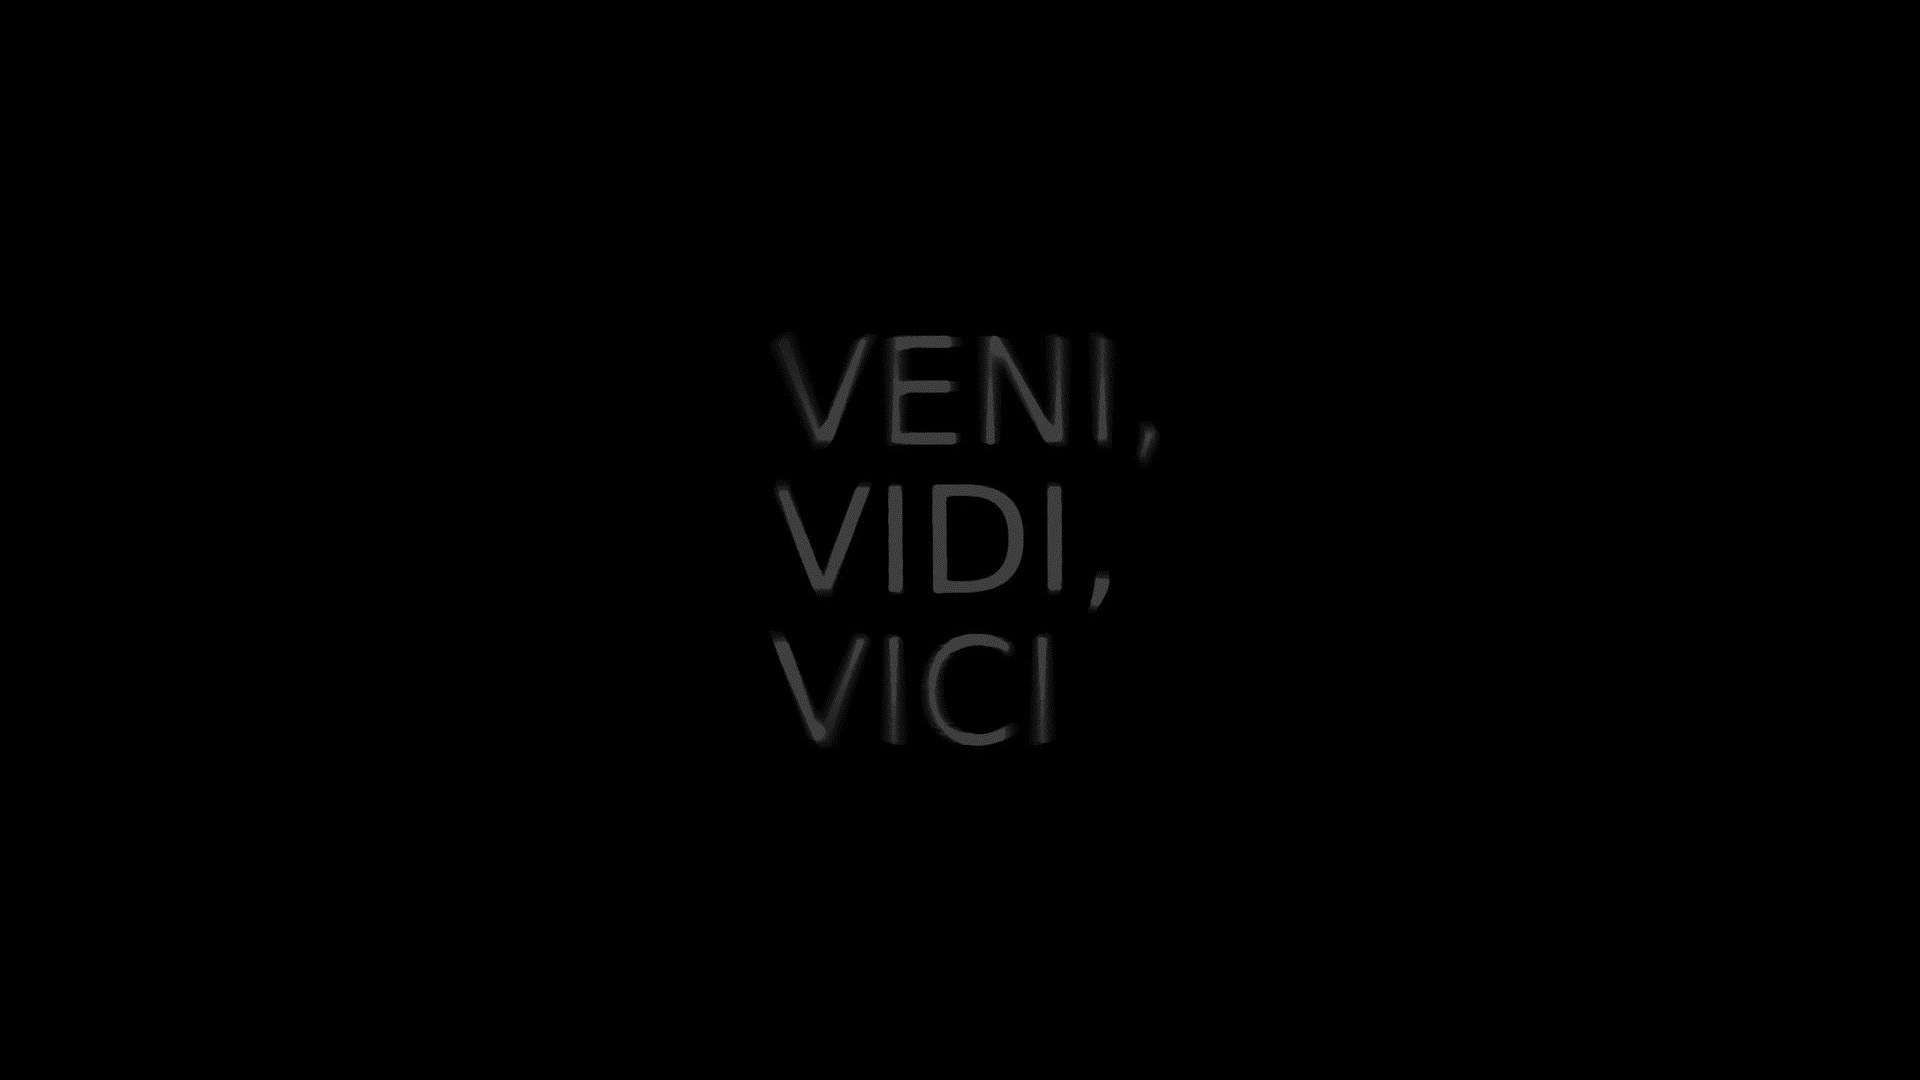 Veni Vidi Vici HD Wallpaper Picture Pictures